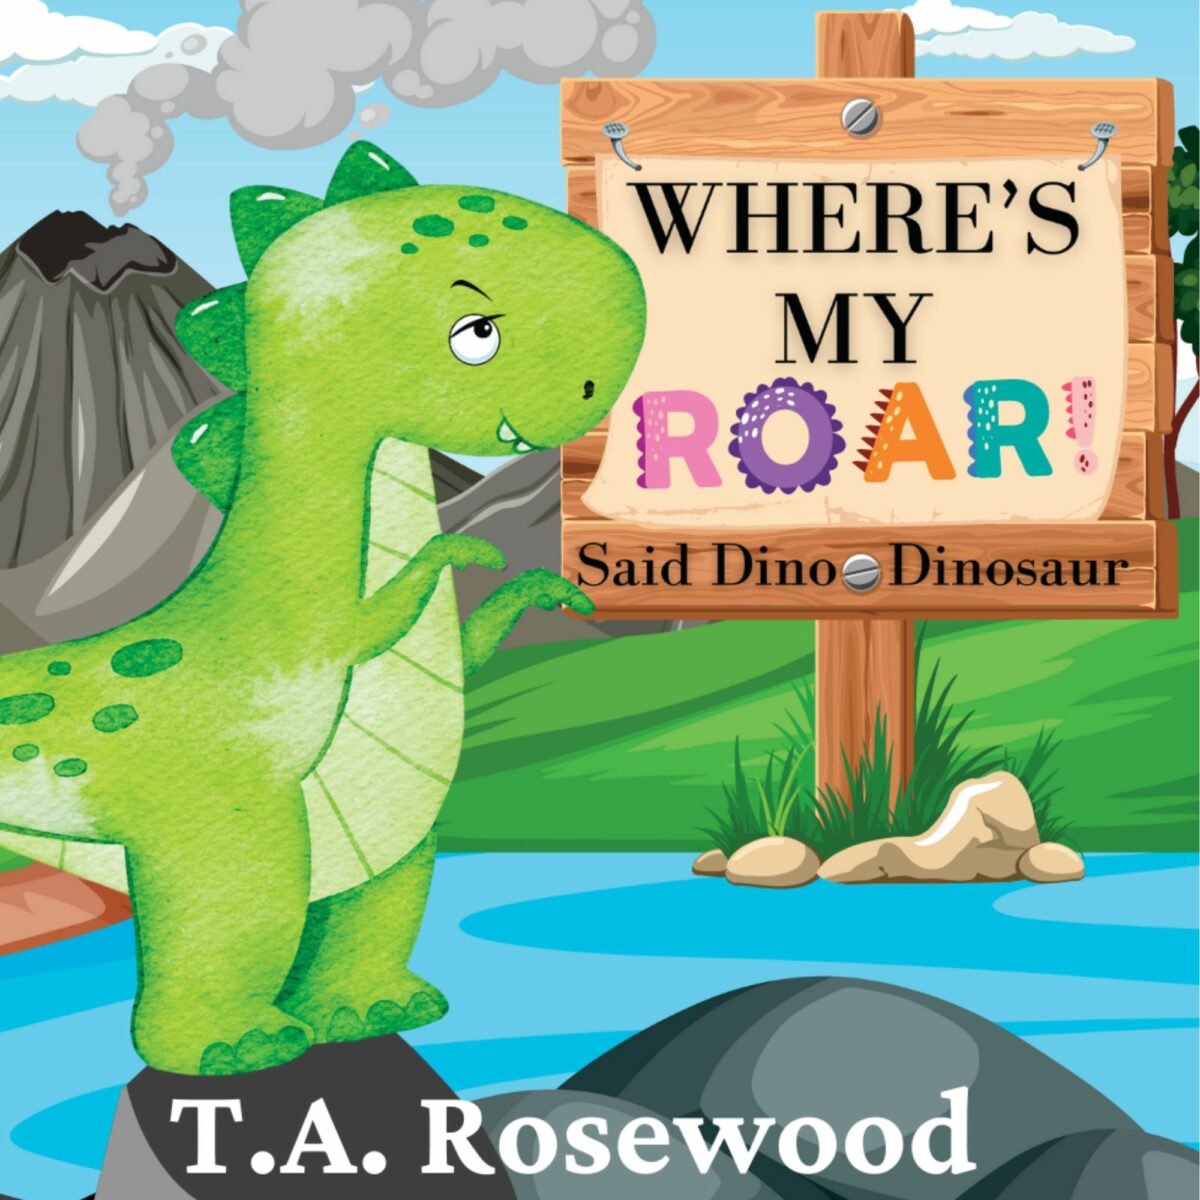 New Dinosaur Book for kids